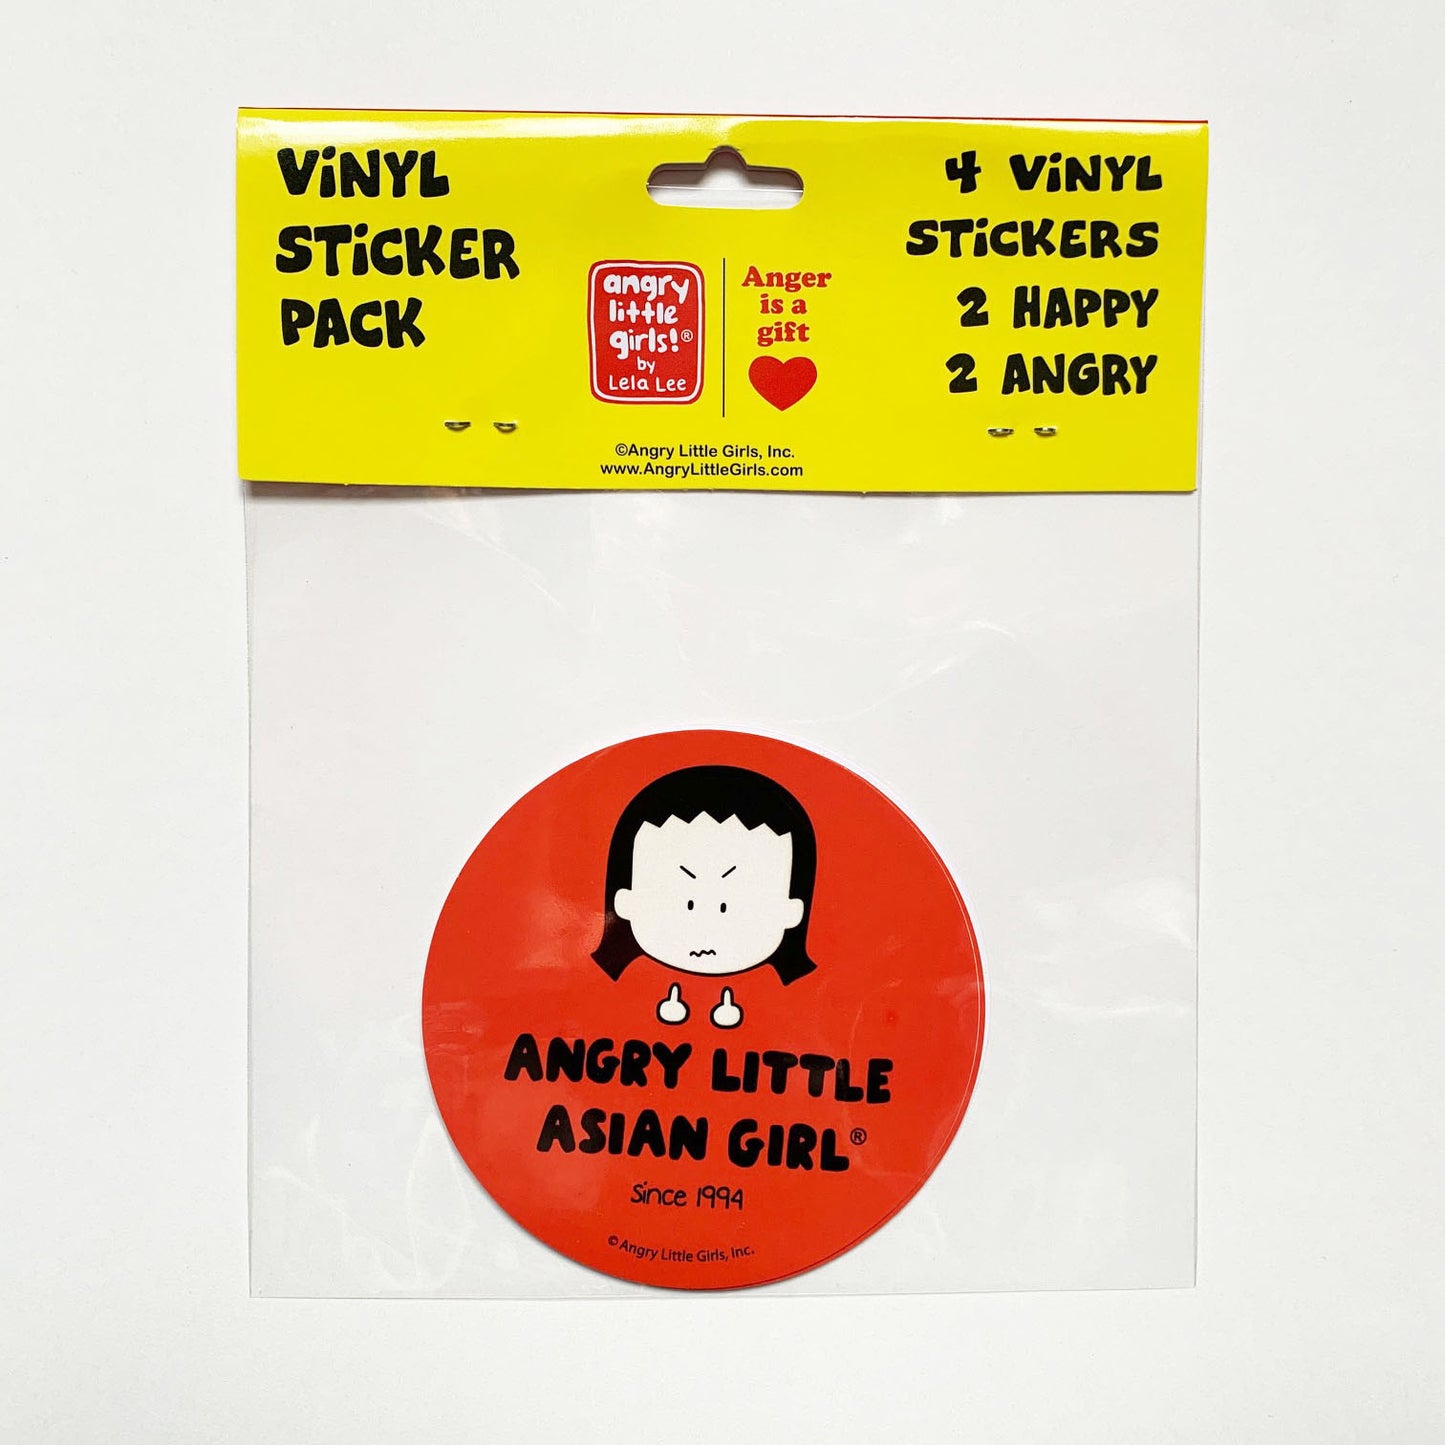 "Angry Little Asian Girl" vinyl sticker pack